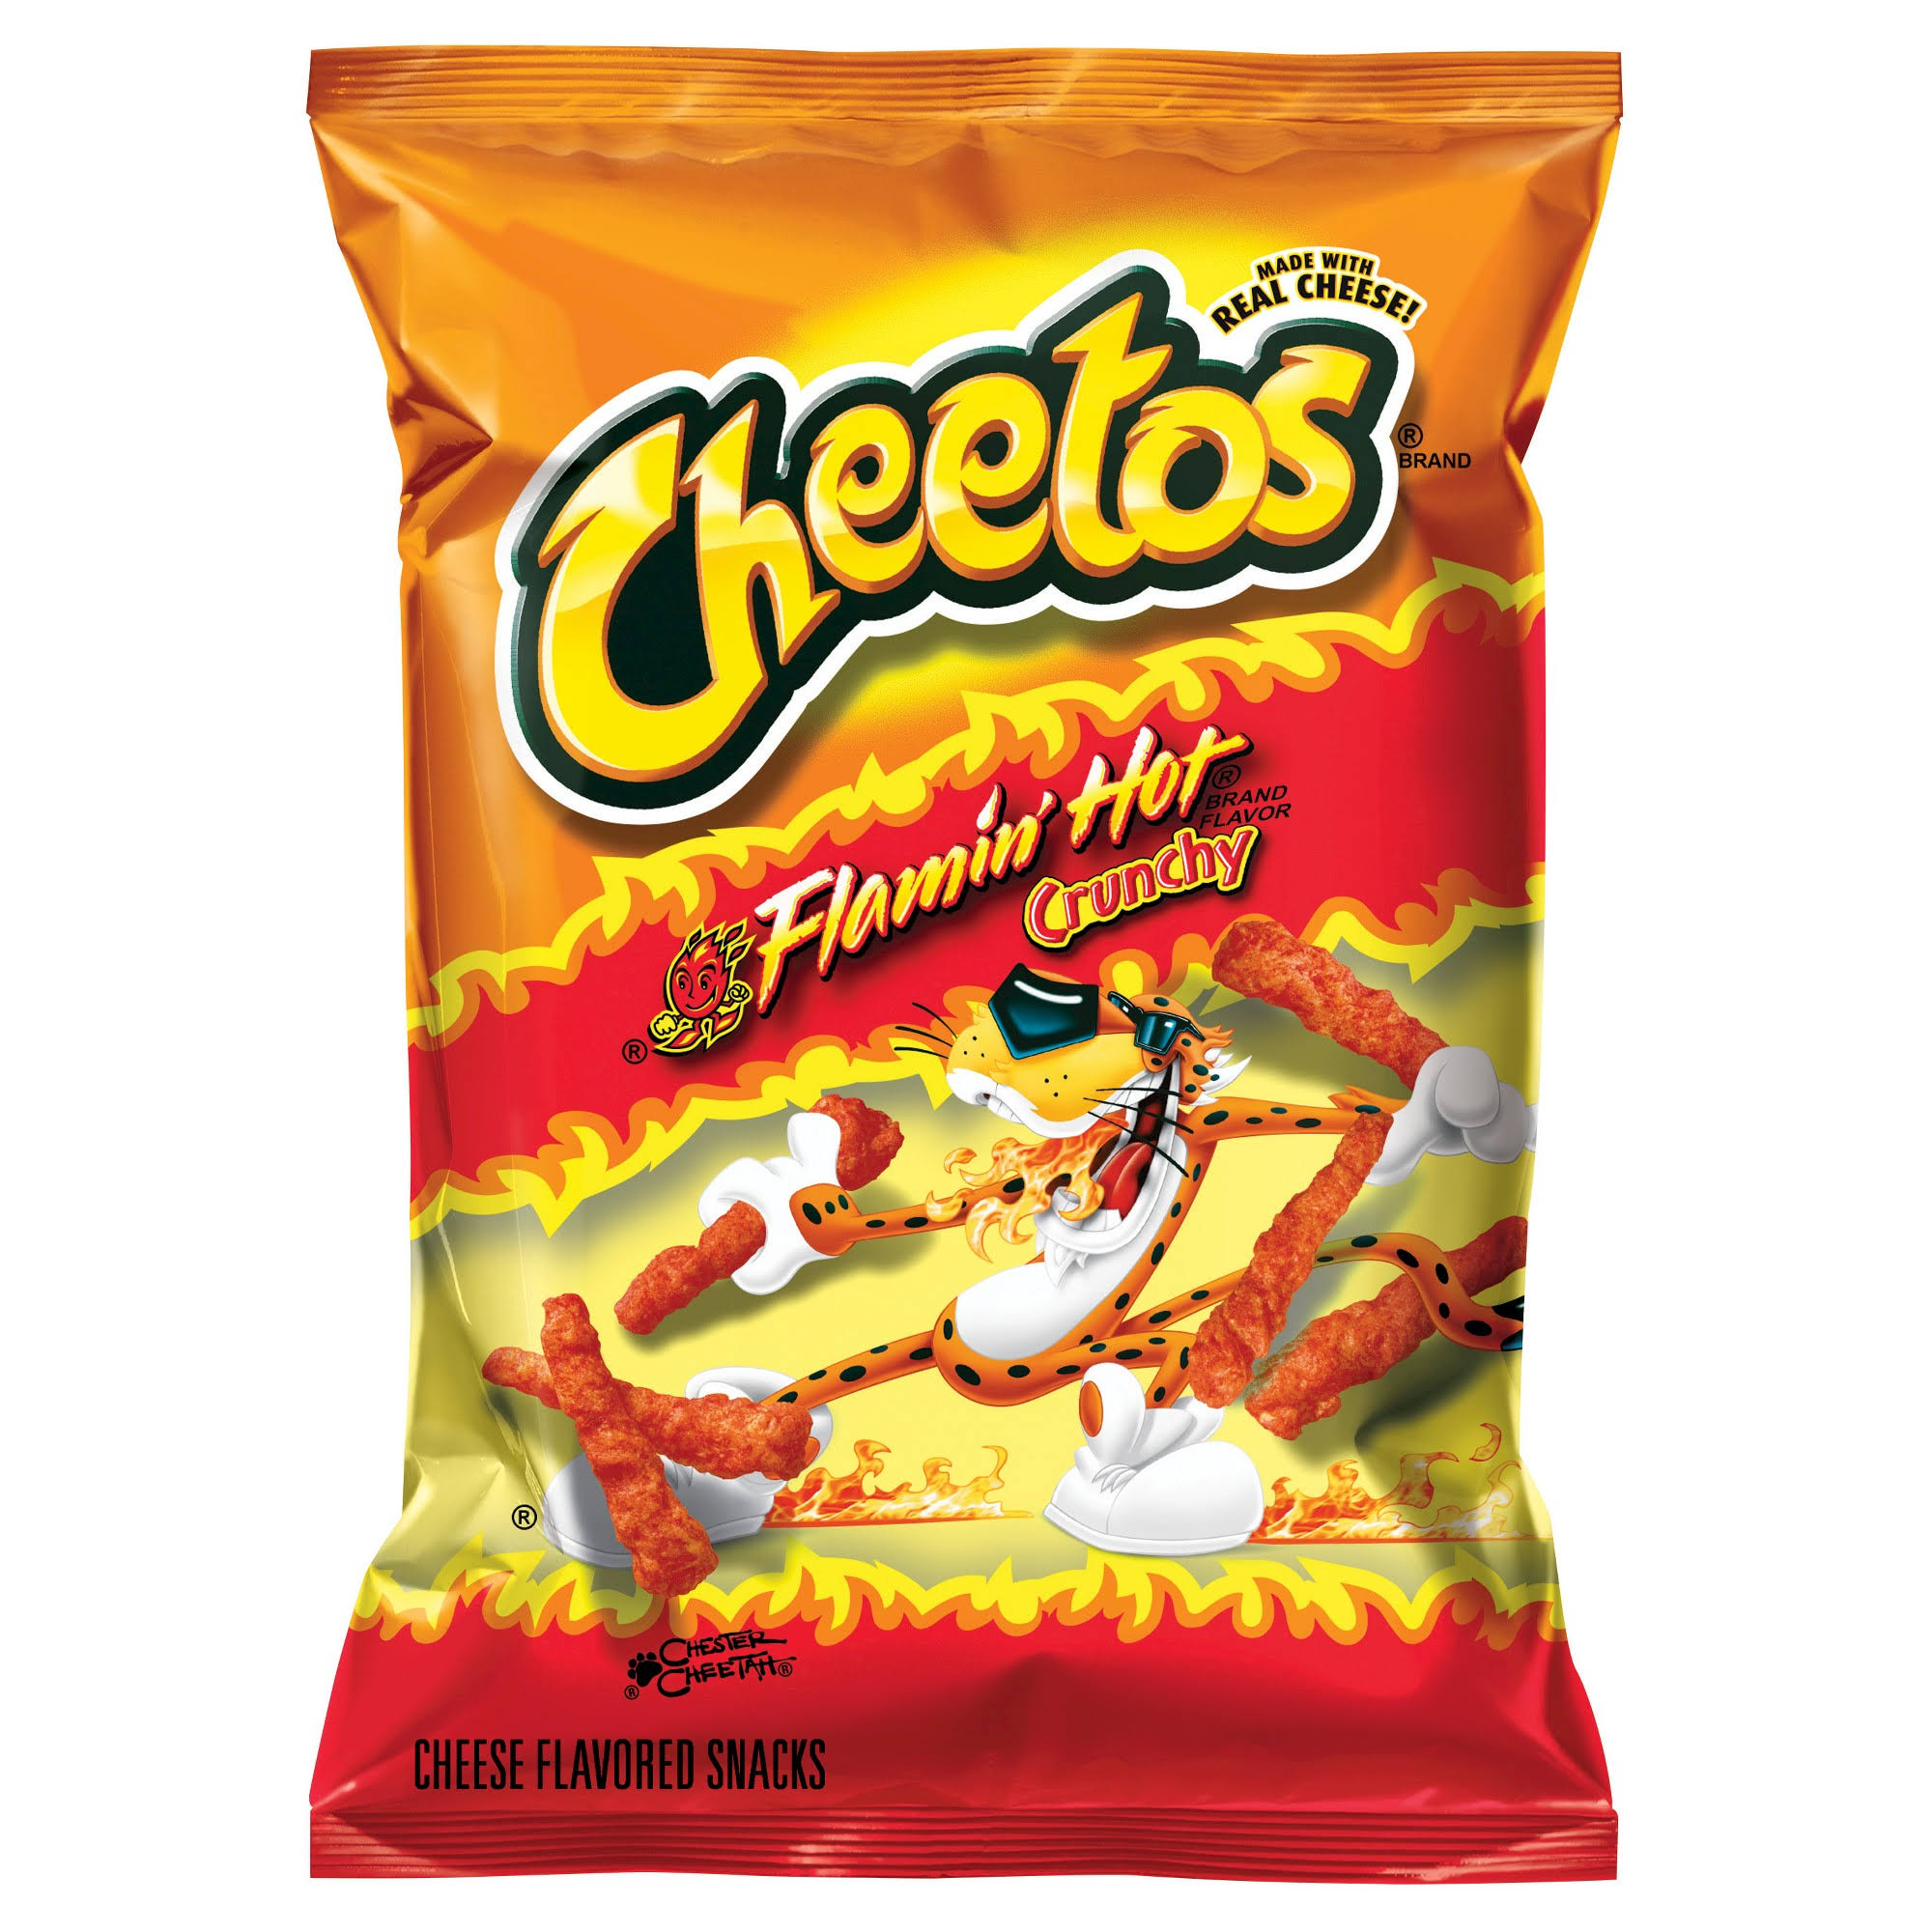 Cheetos Crunchy Snack - Flamin' Hot, 2oz